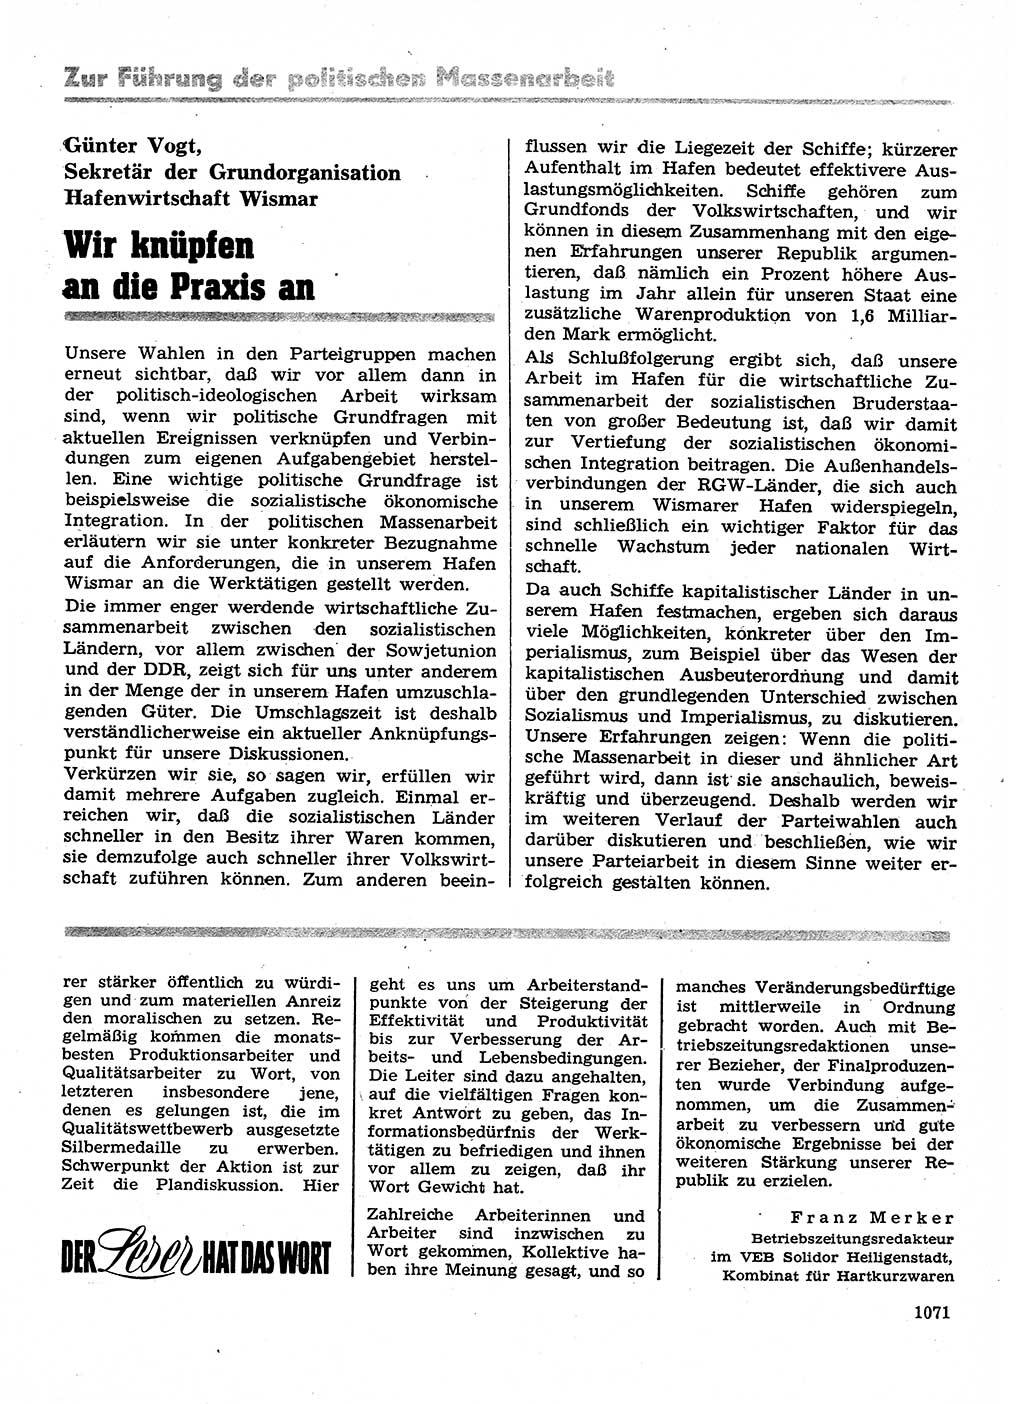 Neuer Weg (NW), Organ des Zentralkomitees (ZK) der SED (Sozialistische Einheitspartei Deutschlands) für Fragen des Parteilebens, 28. Jahrgang [Deutsche Demokratische Republik (DDR)] 1973, Seite 1071 (NW ZK SED DDR 1973, S. 1071)